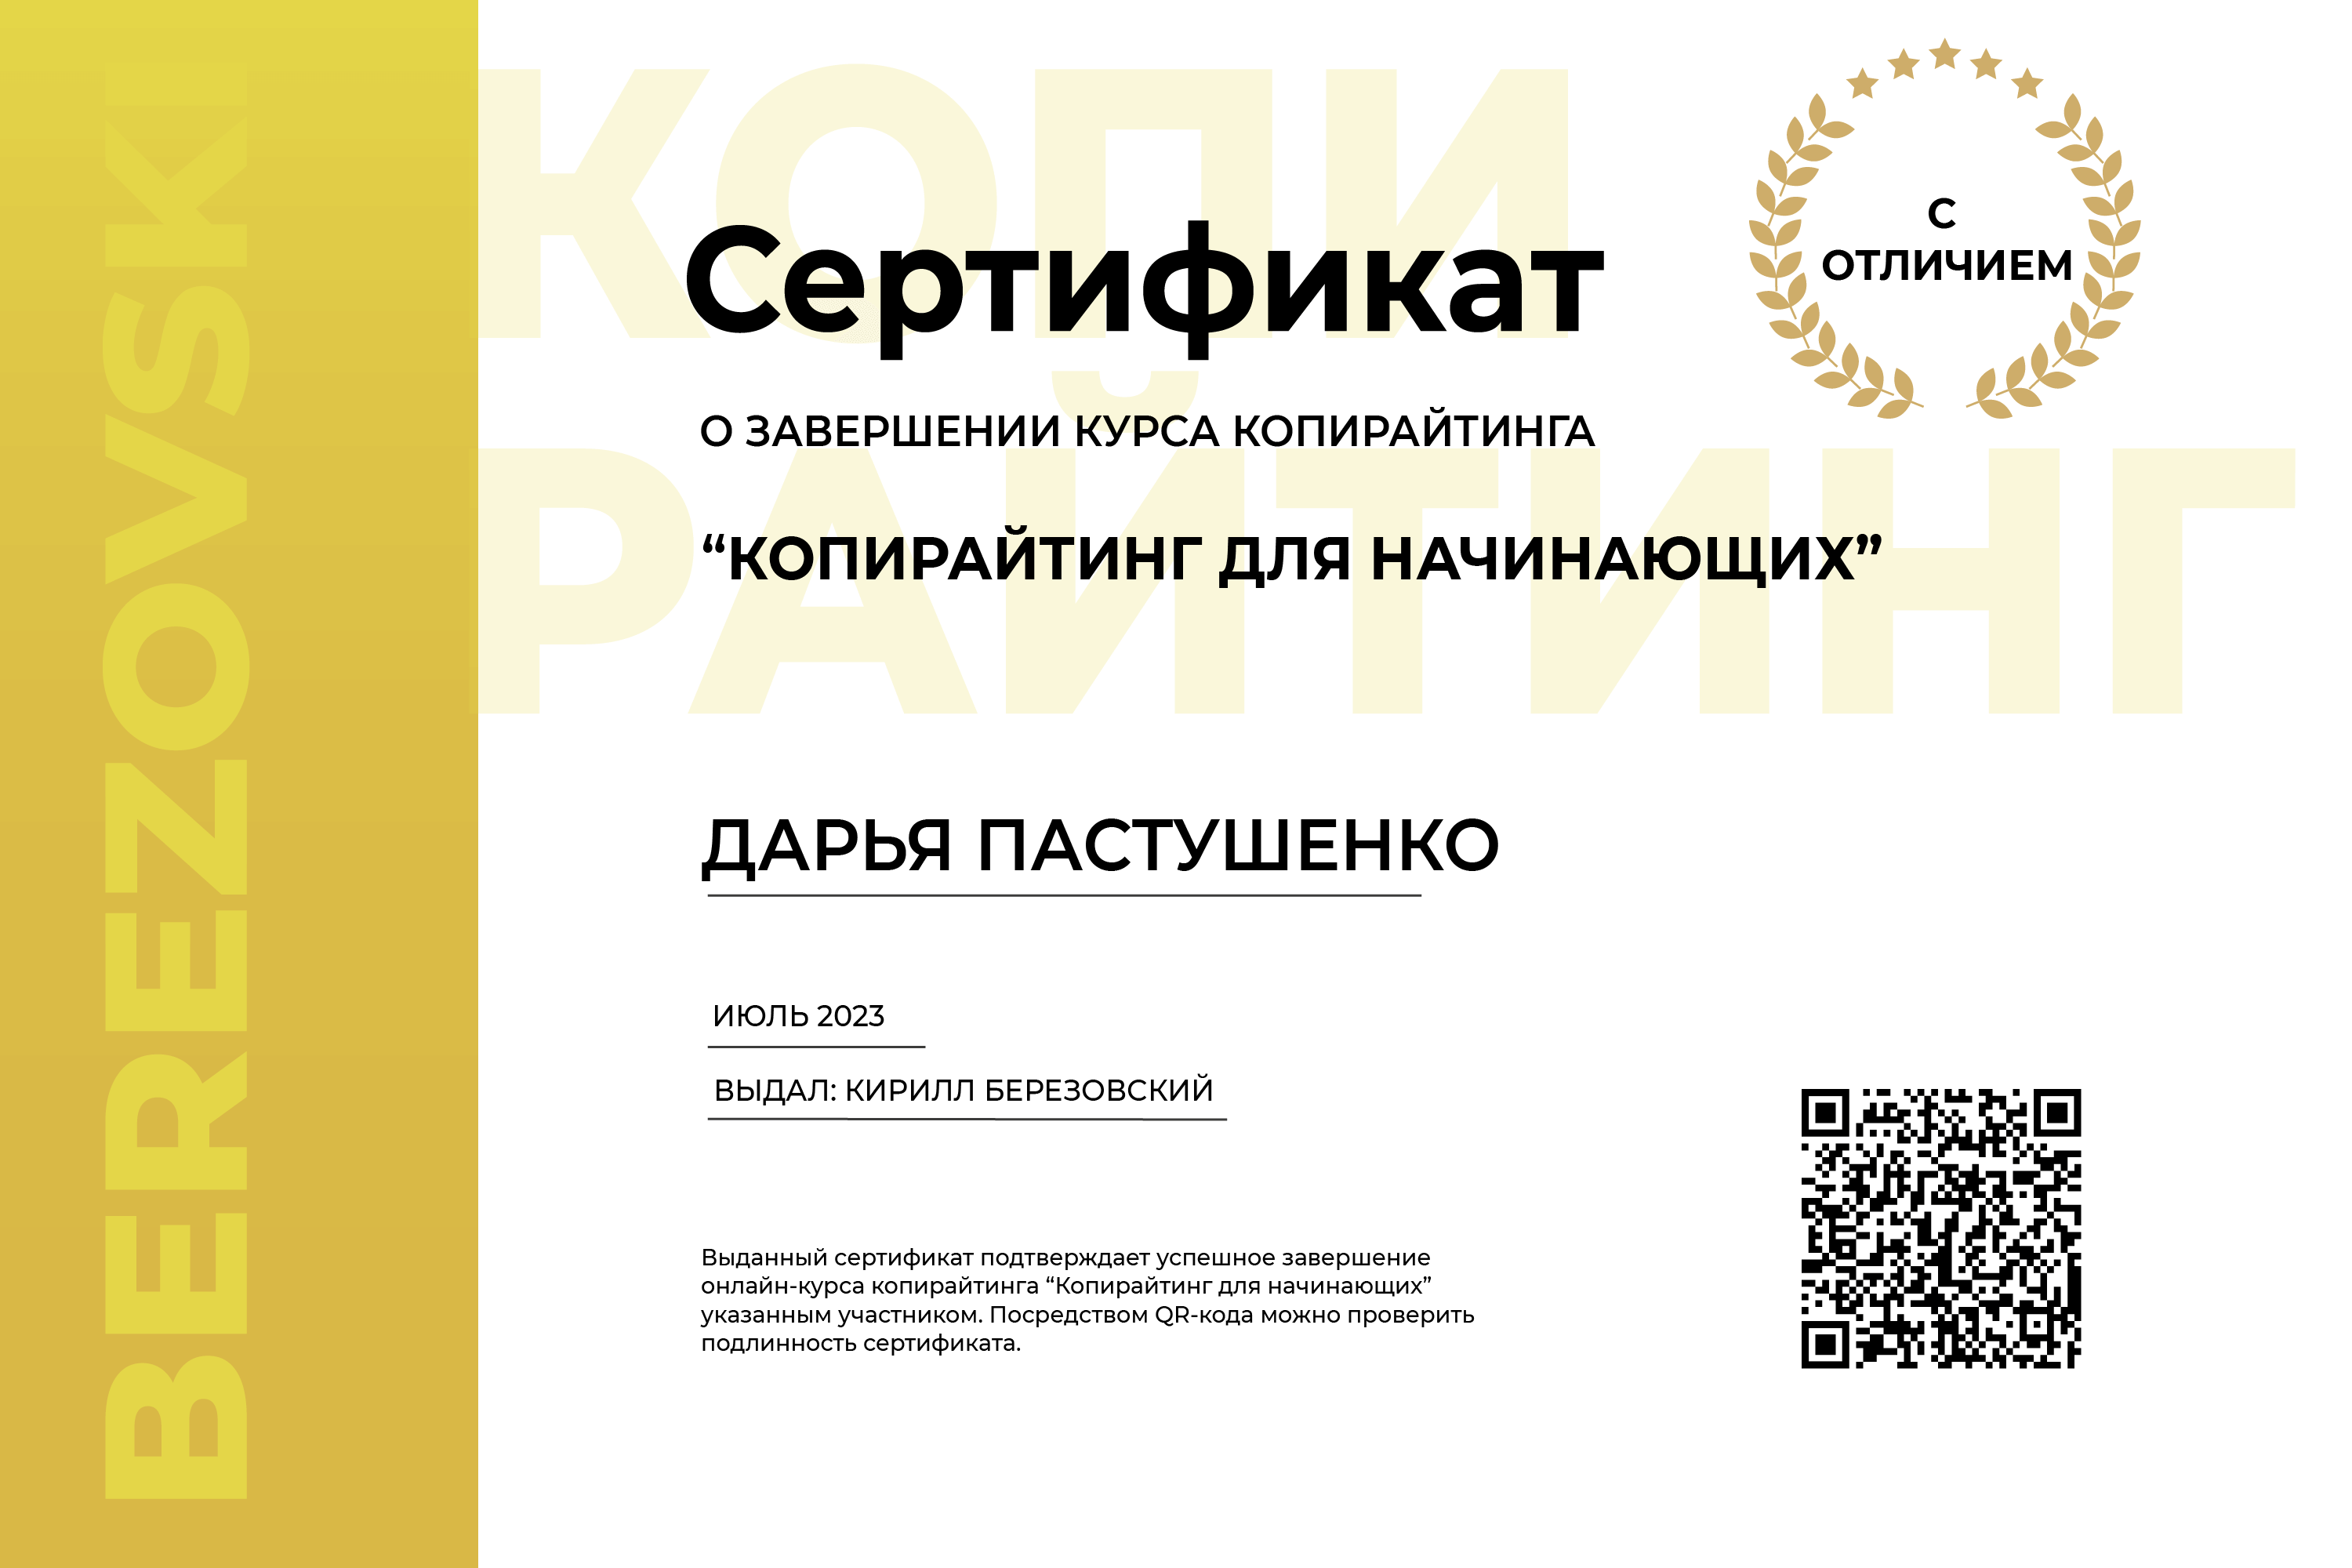 сертификат дарья пастушенко копирайтинг для начинающих